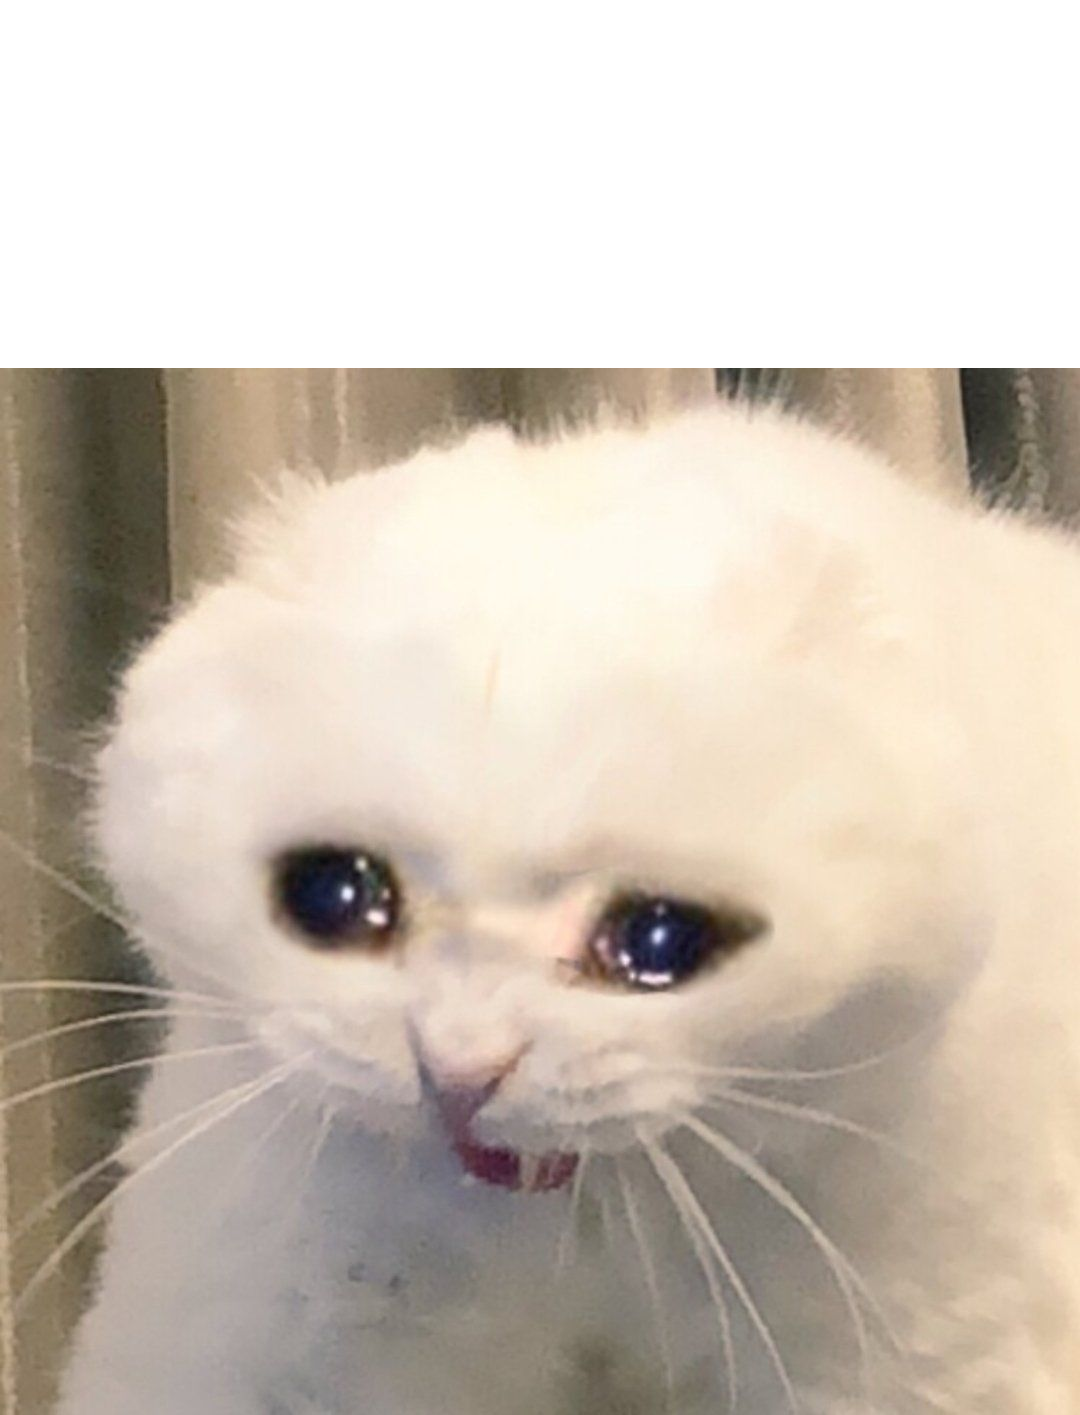 77  Crying Sad Cat Meme Template